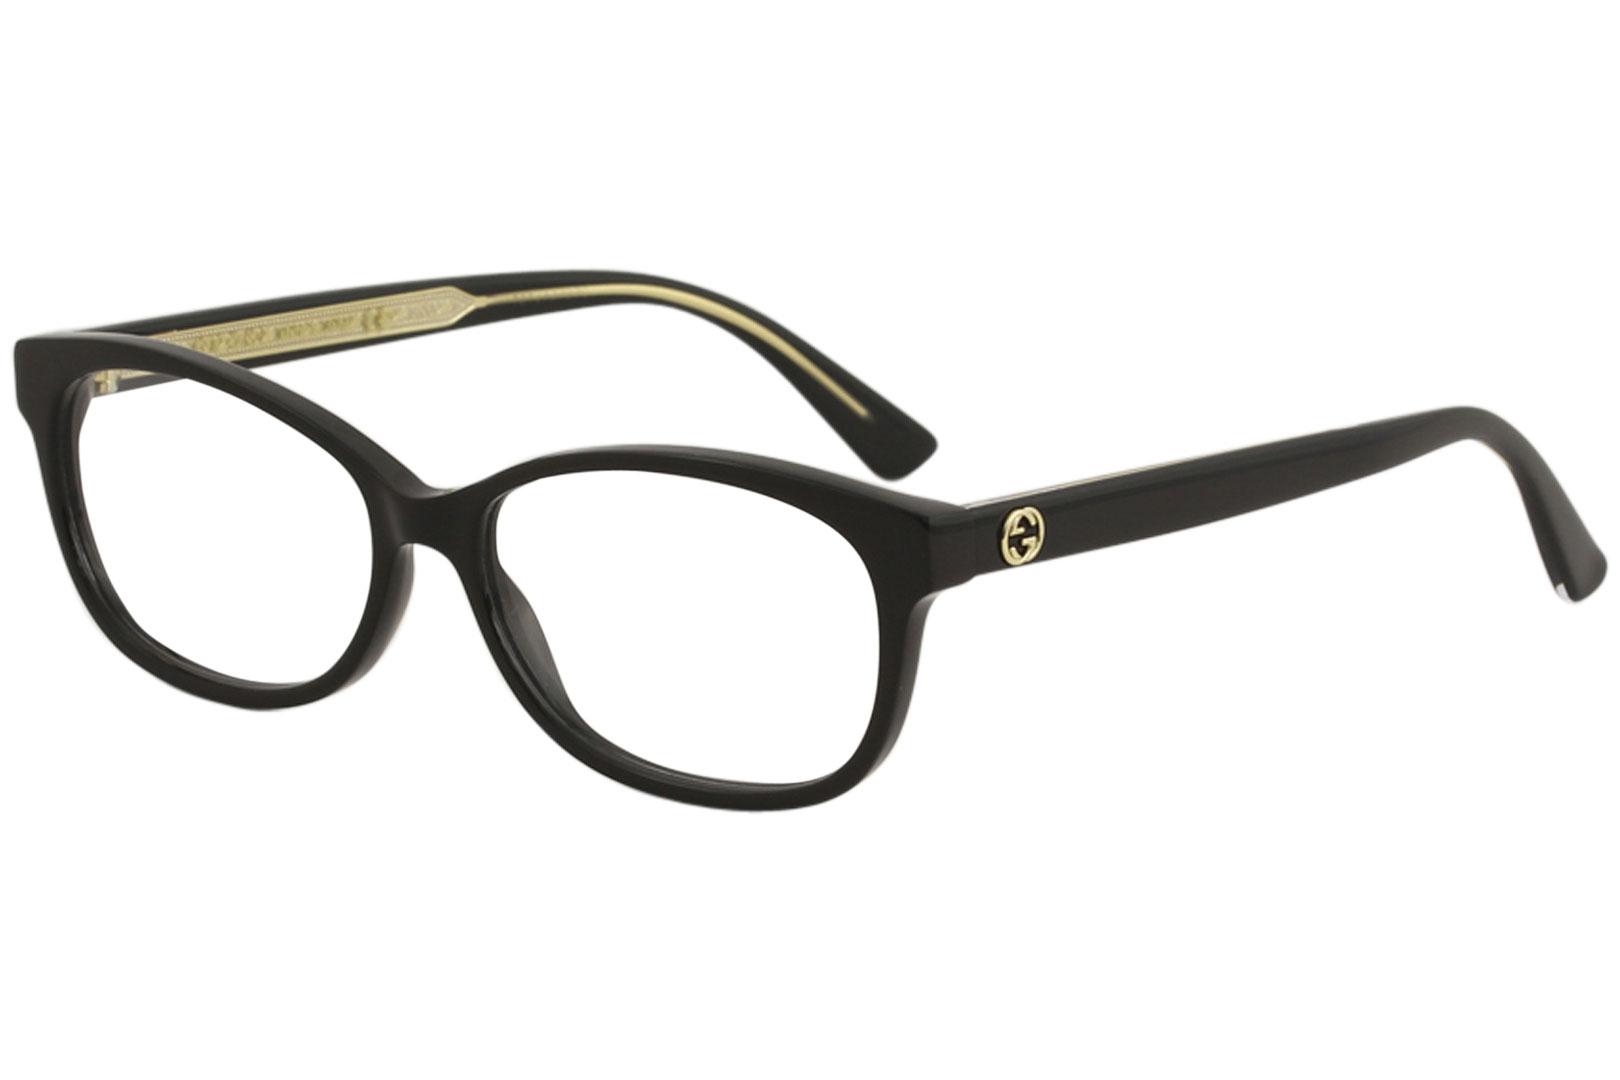 Gucci Women's Eyeglasses GG0309O GG/0309/O Full Rim Optical Frame - Black   001 - Lens 54 Bridge 15 Temple 140mm